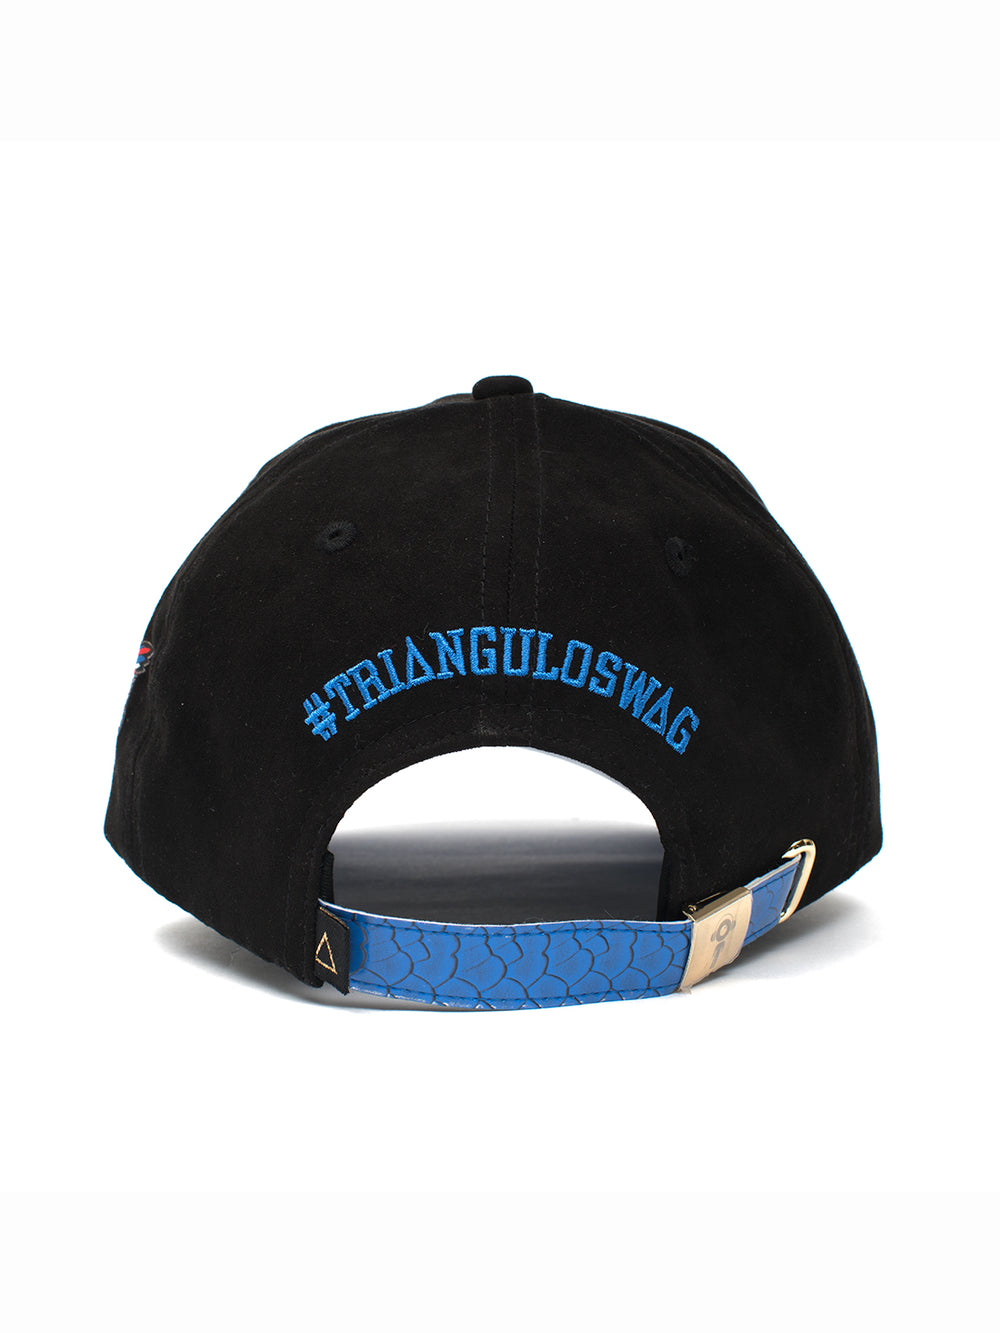 Blue Snakeskin Dad hat - Triangulo Swag